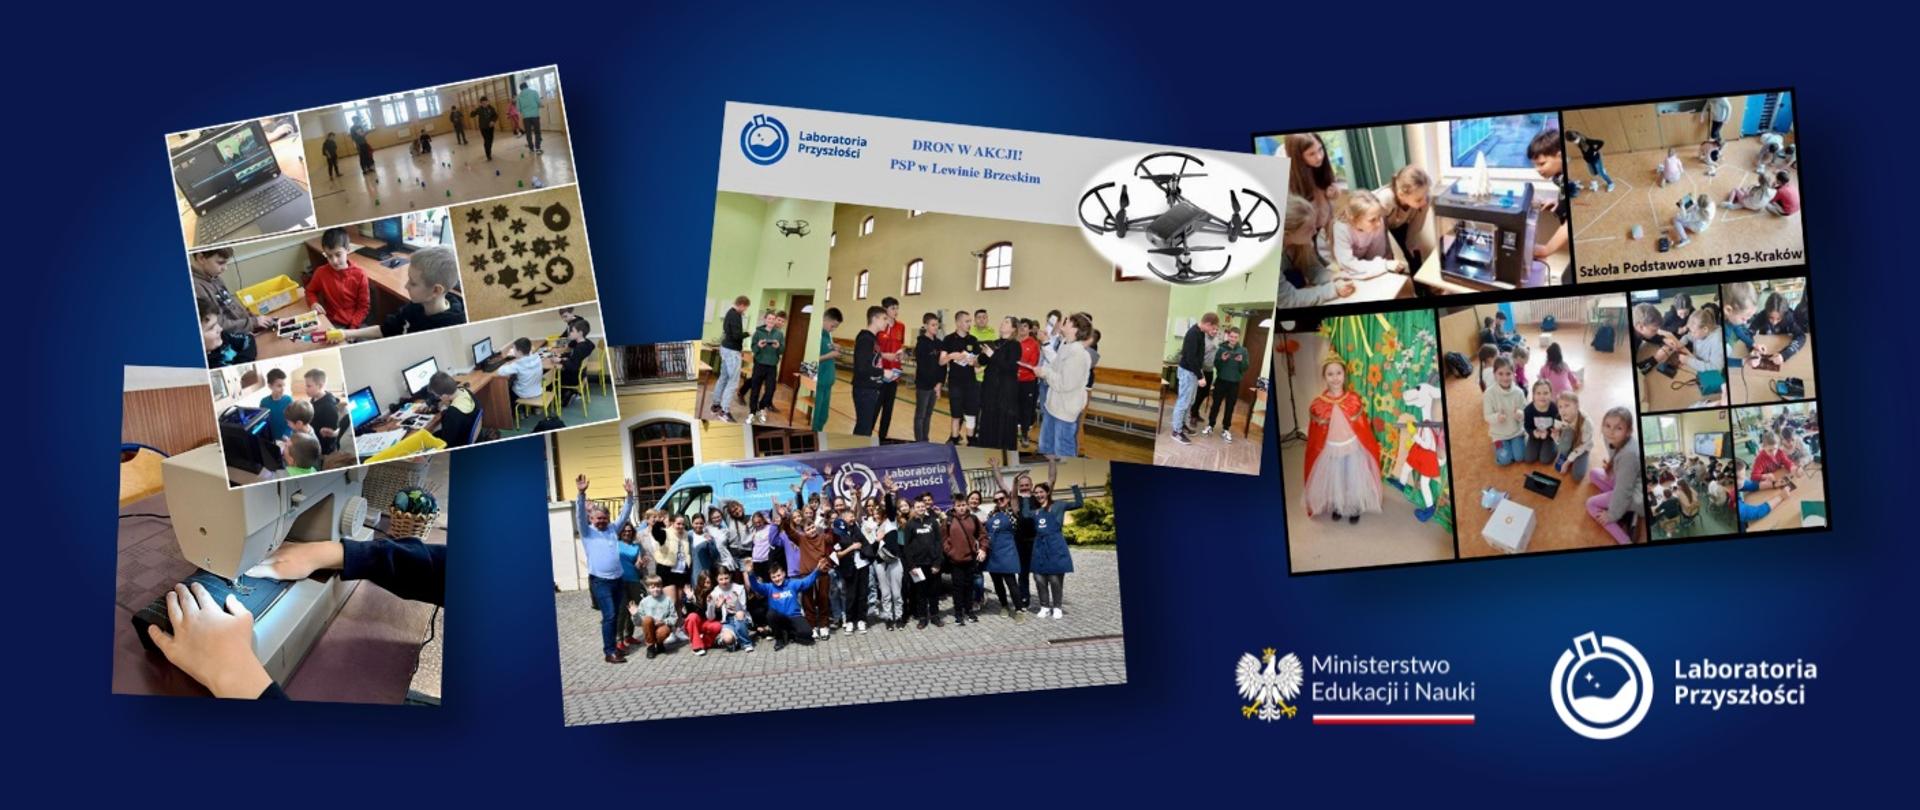 Kolaż ze zdjęciami przedstawiającymi uczniów stojących w grupach w różnych miejscach, na dole logotypy Ministerstwa Edukacji i Nauki oraz programu Laboratoria Przyszłości.